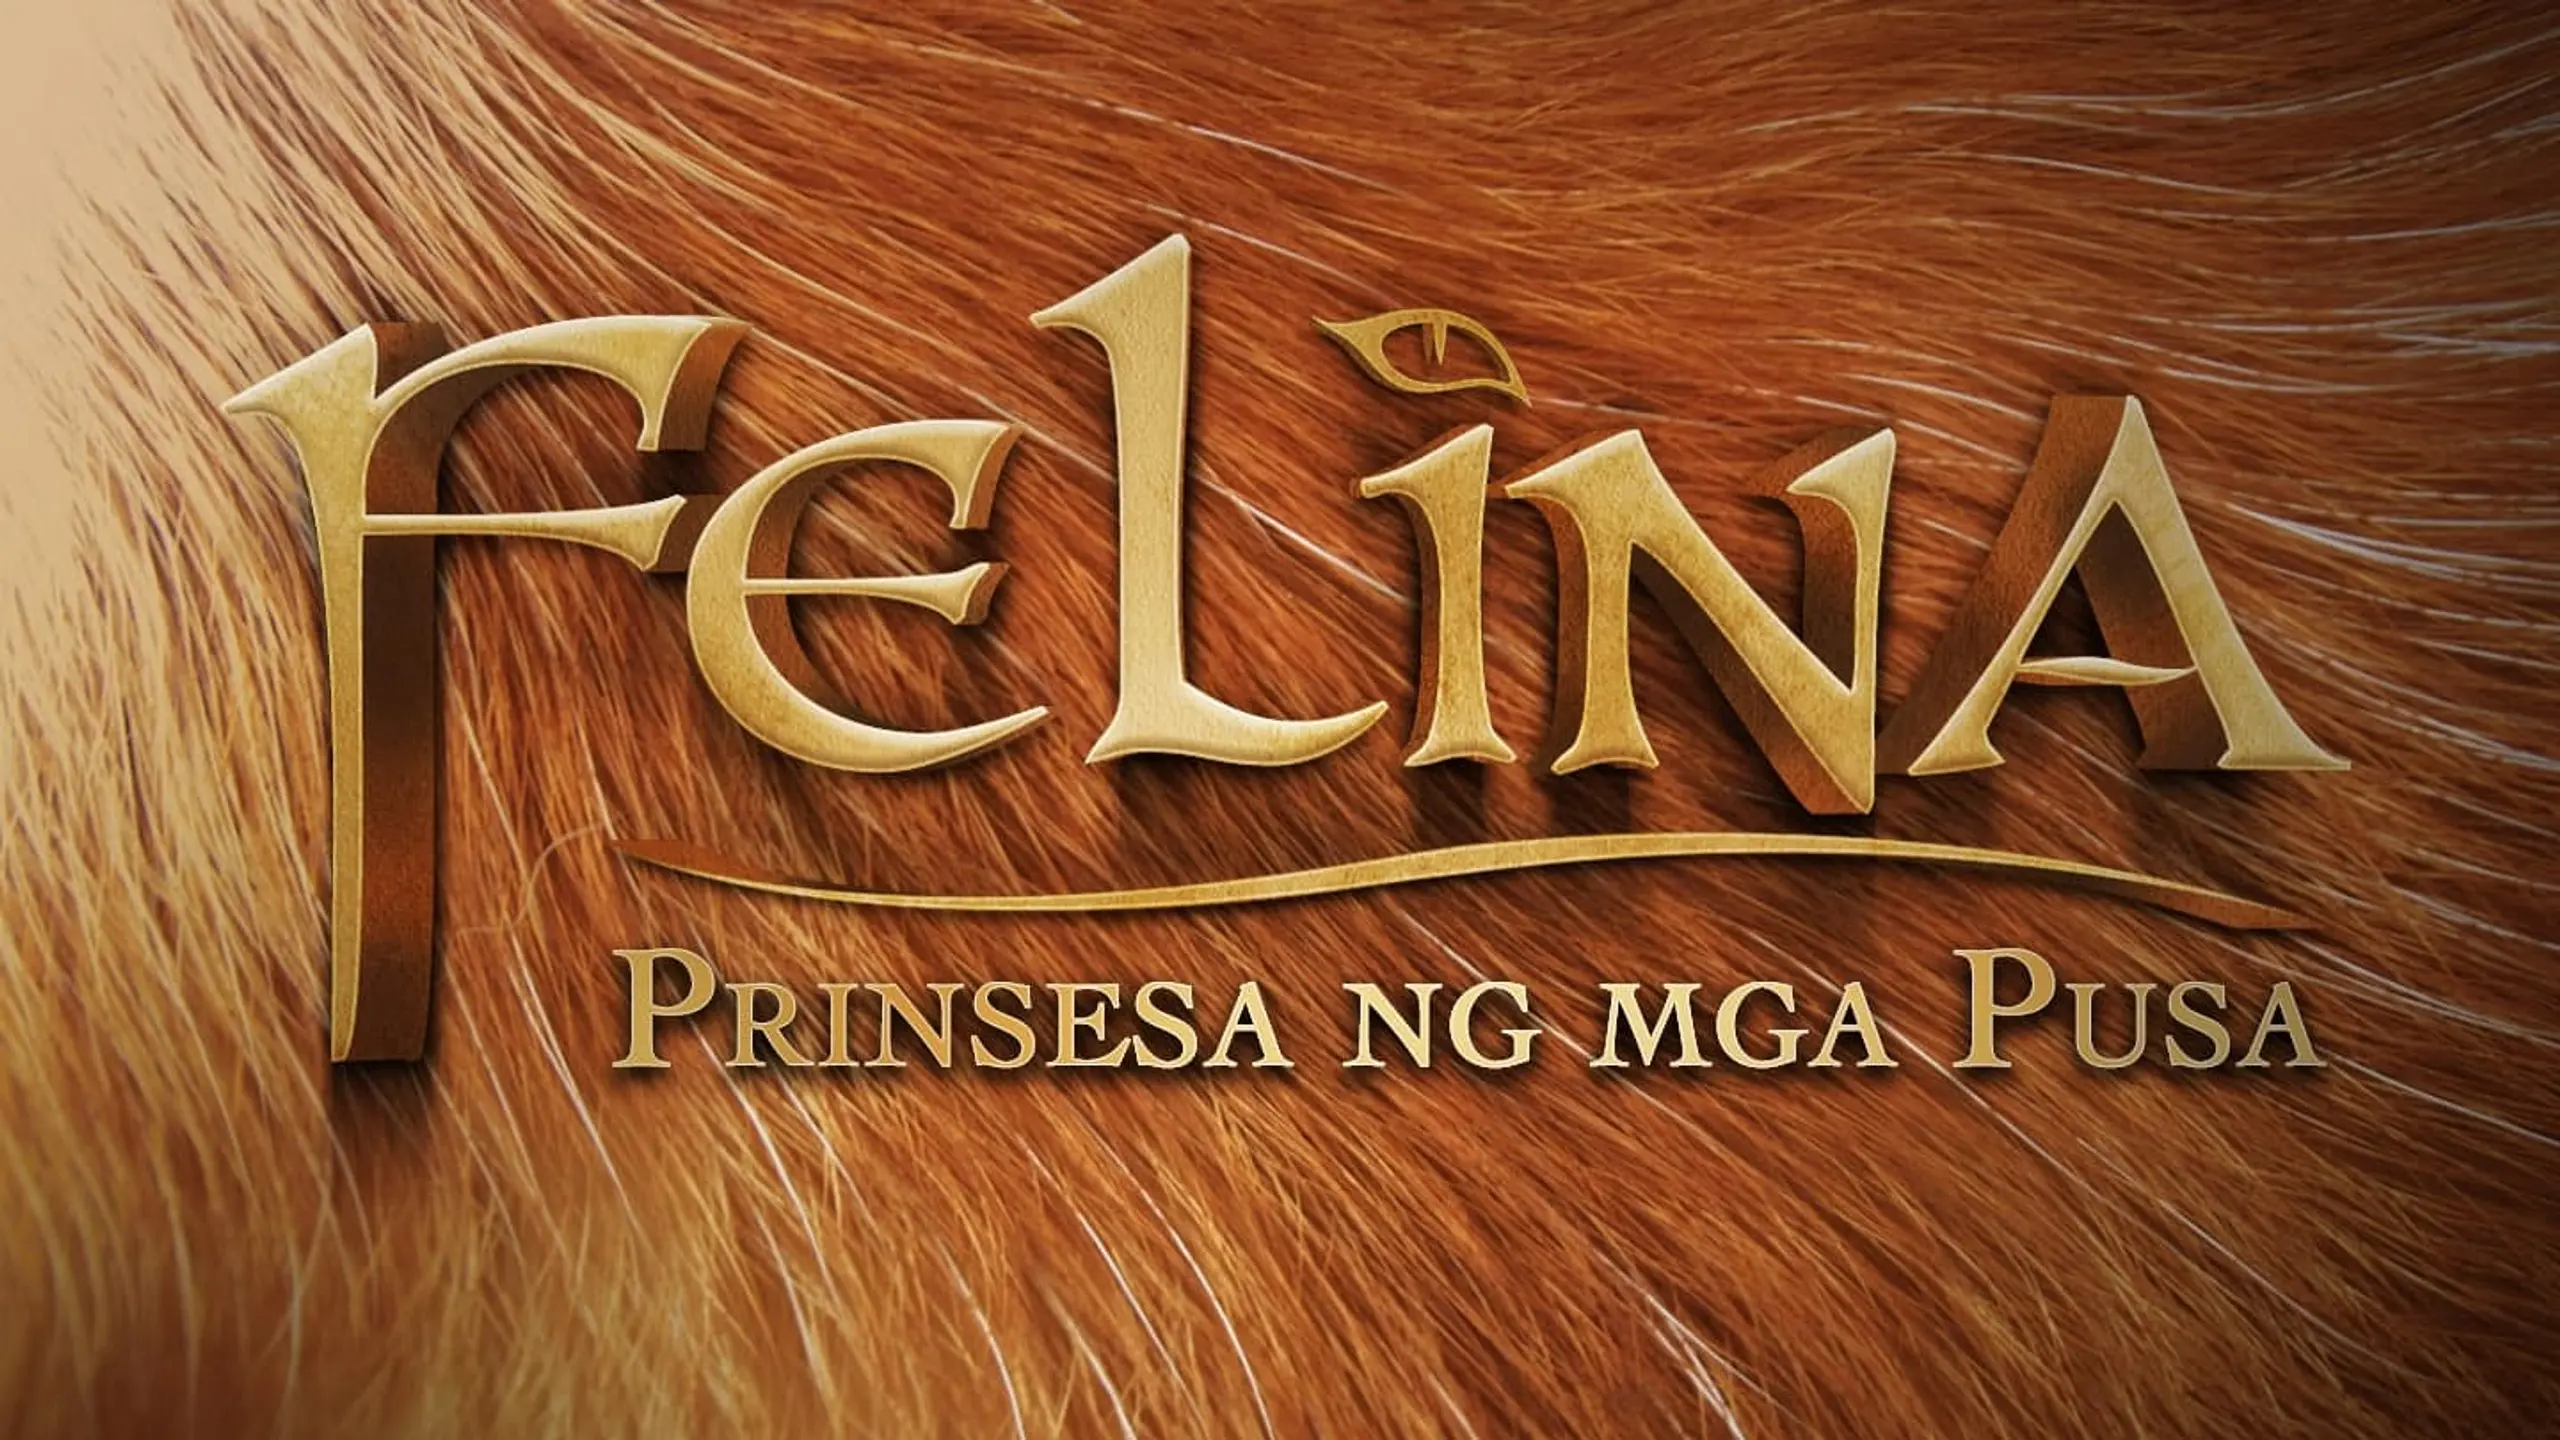 Felina: Prinsesa ng mga Pusa